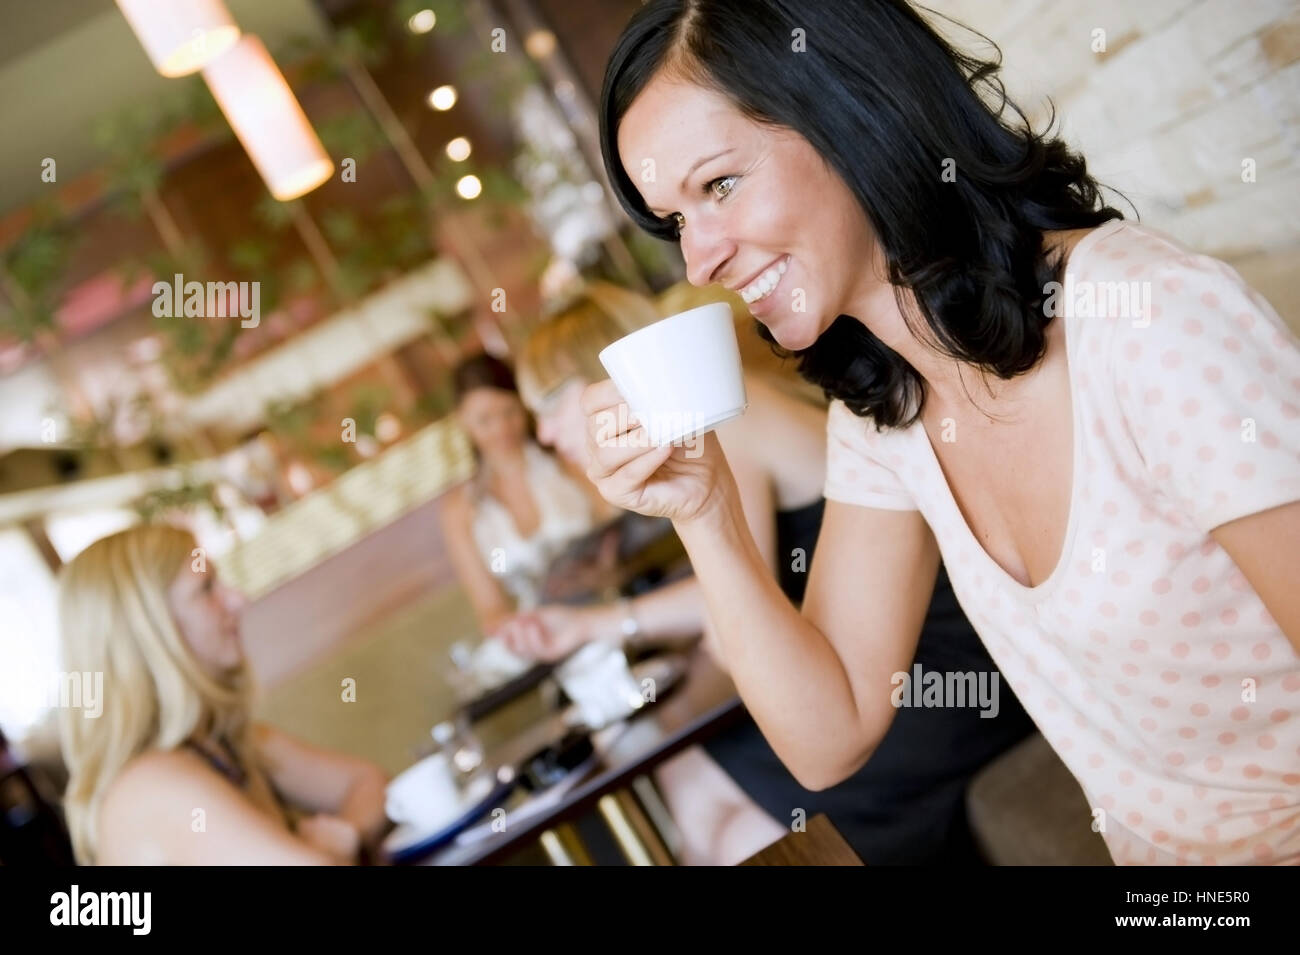 Model Release, Junge Frauen Im Kaffeehaus - junge Frauen in cafeteria Stockfoto